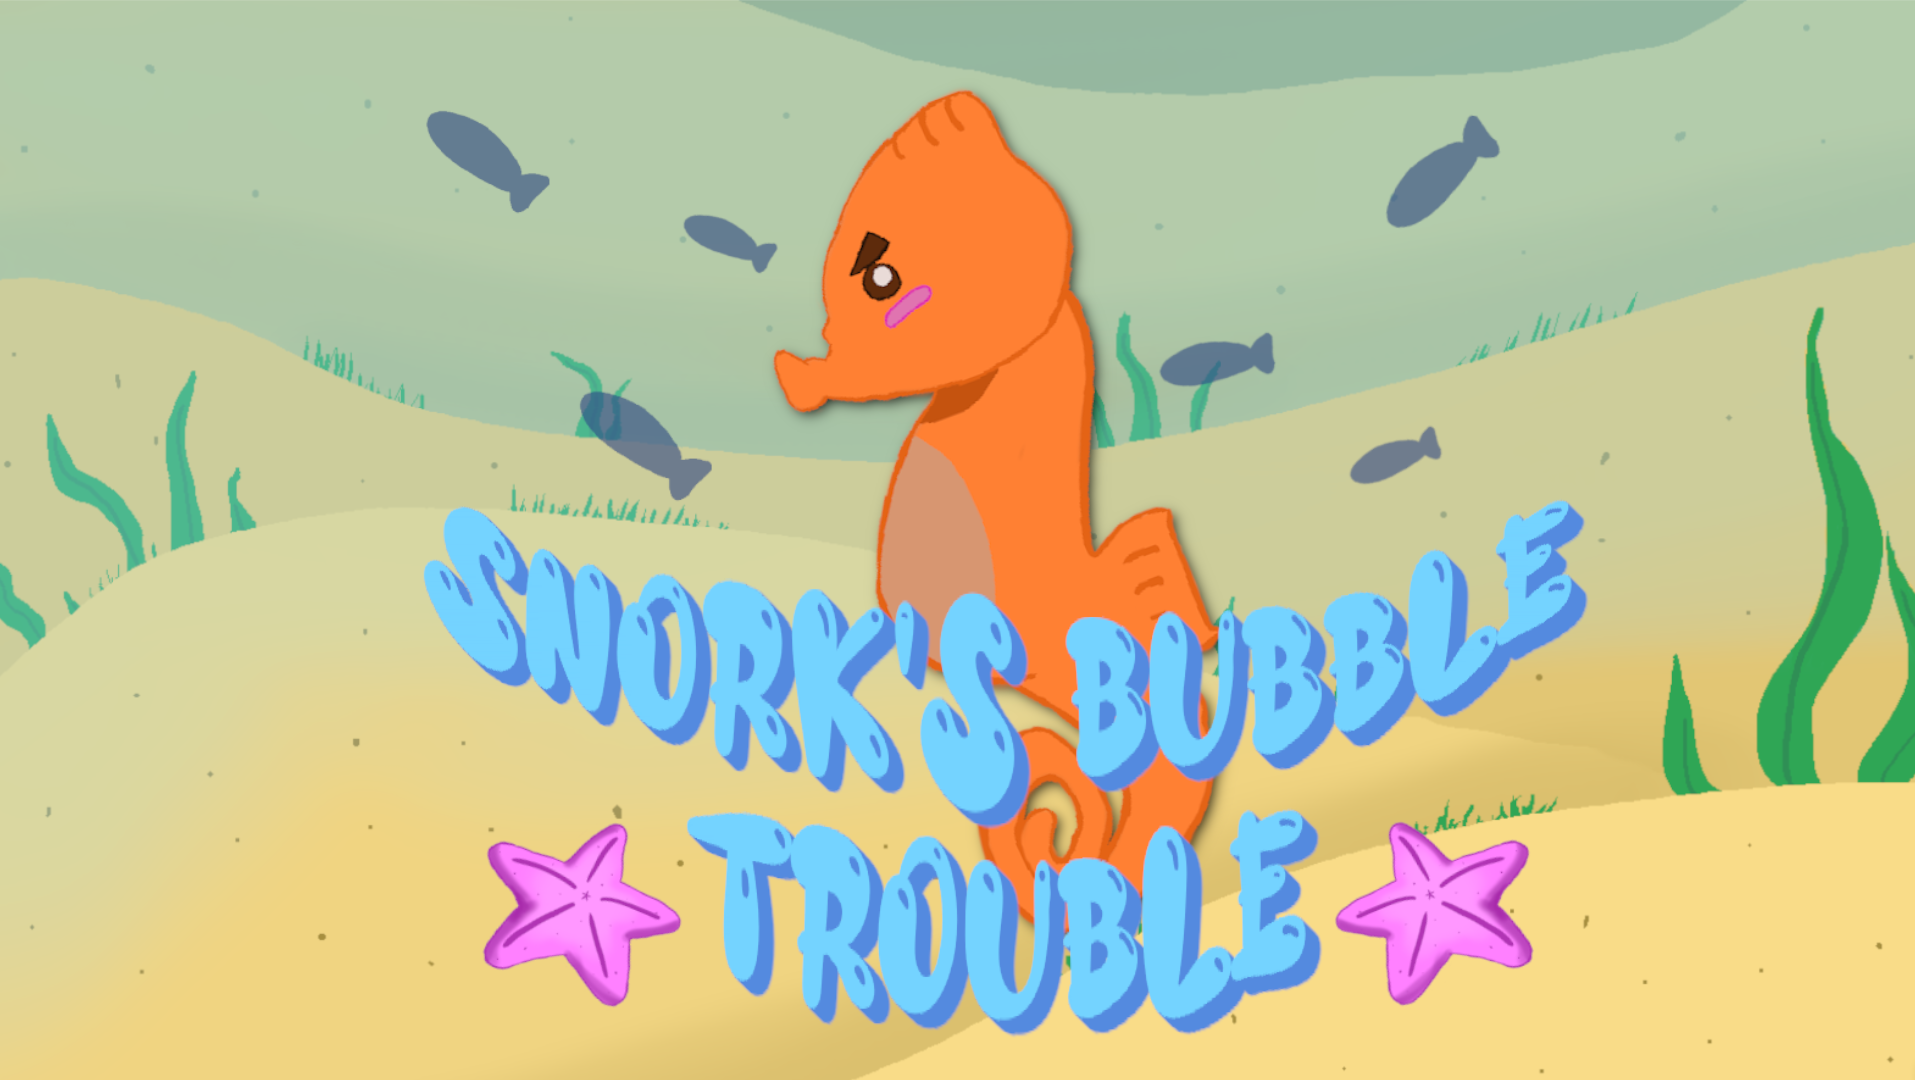 Snork's Bubble Trouble